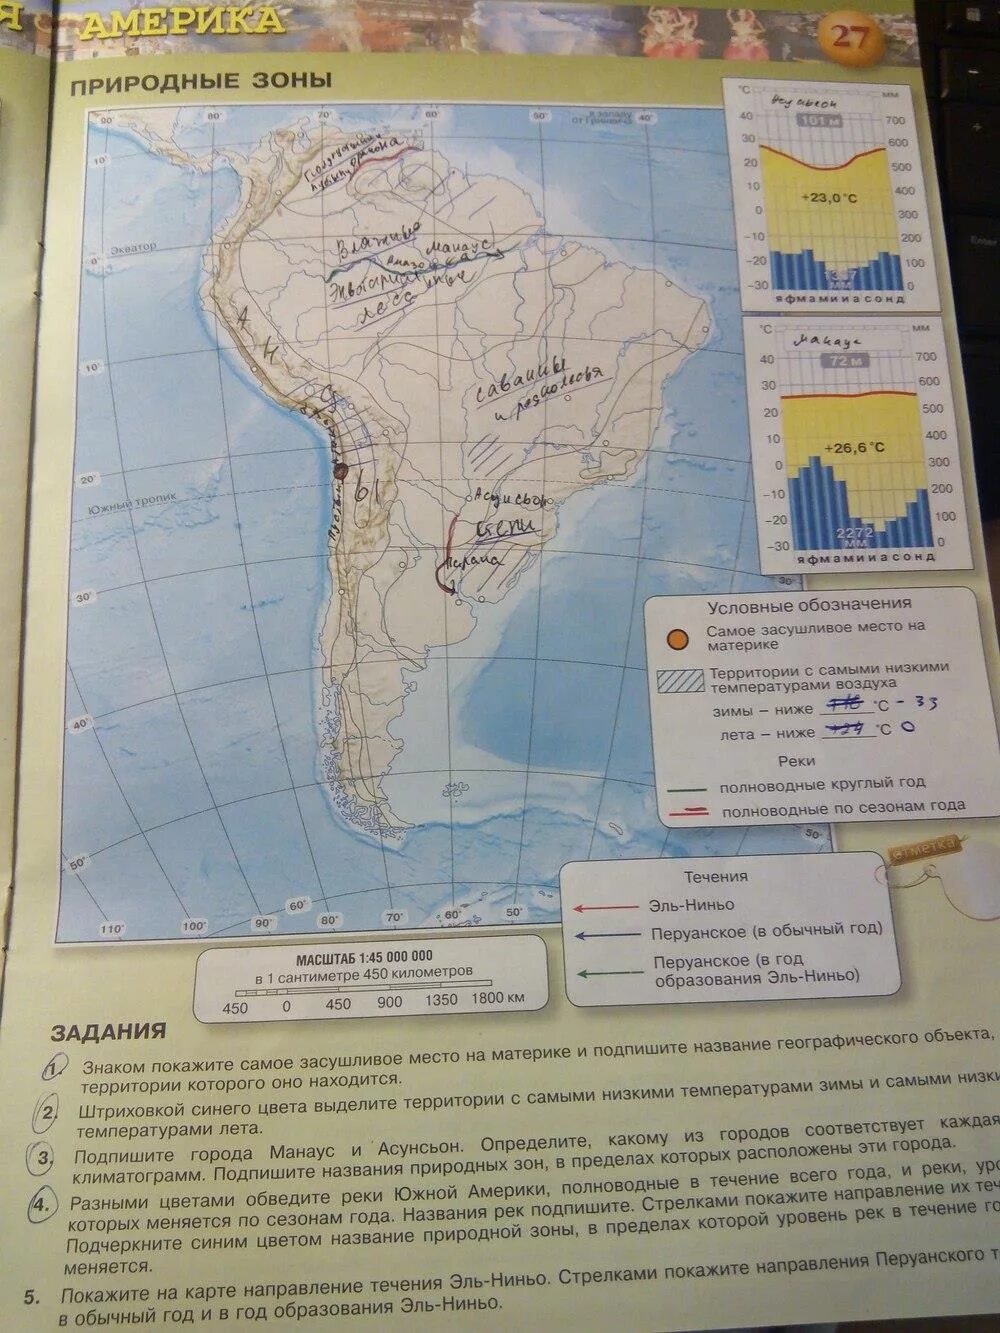 Впрочем по географии 7 класс. География 7 класс контурные карты стр 27. Карта Южной Америки 7 класс география. Карта по географии 7 класс Южная Америка.